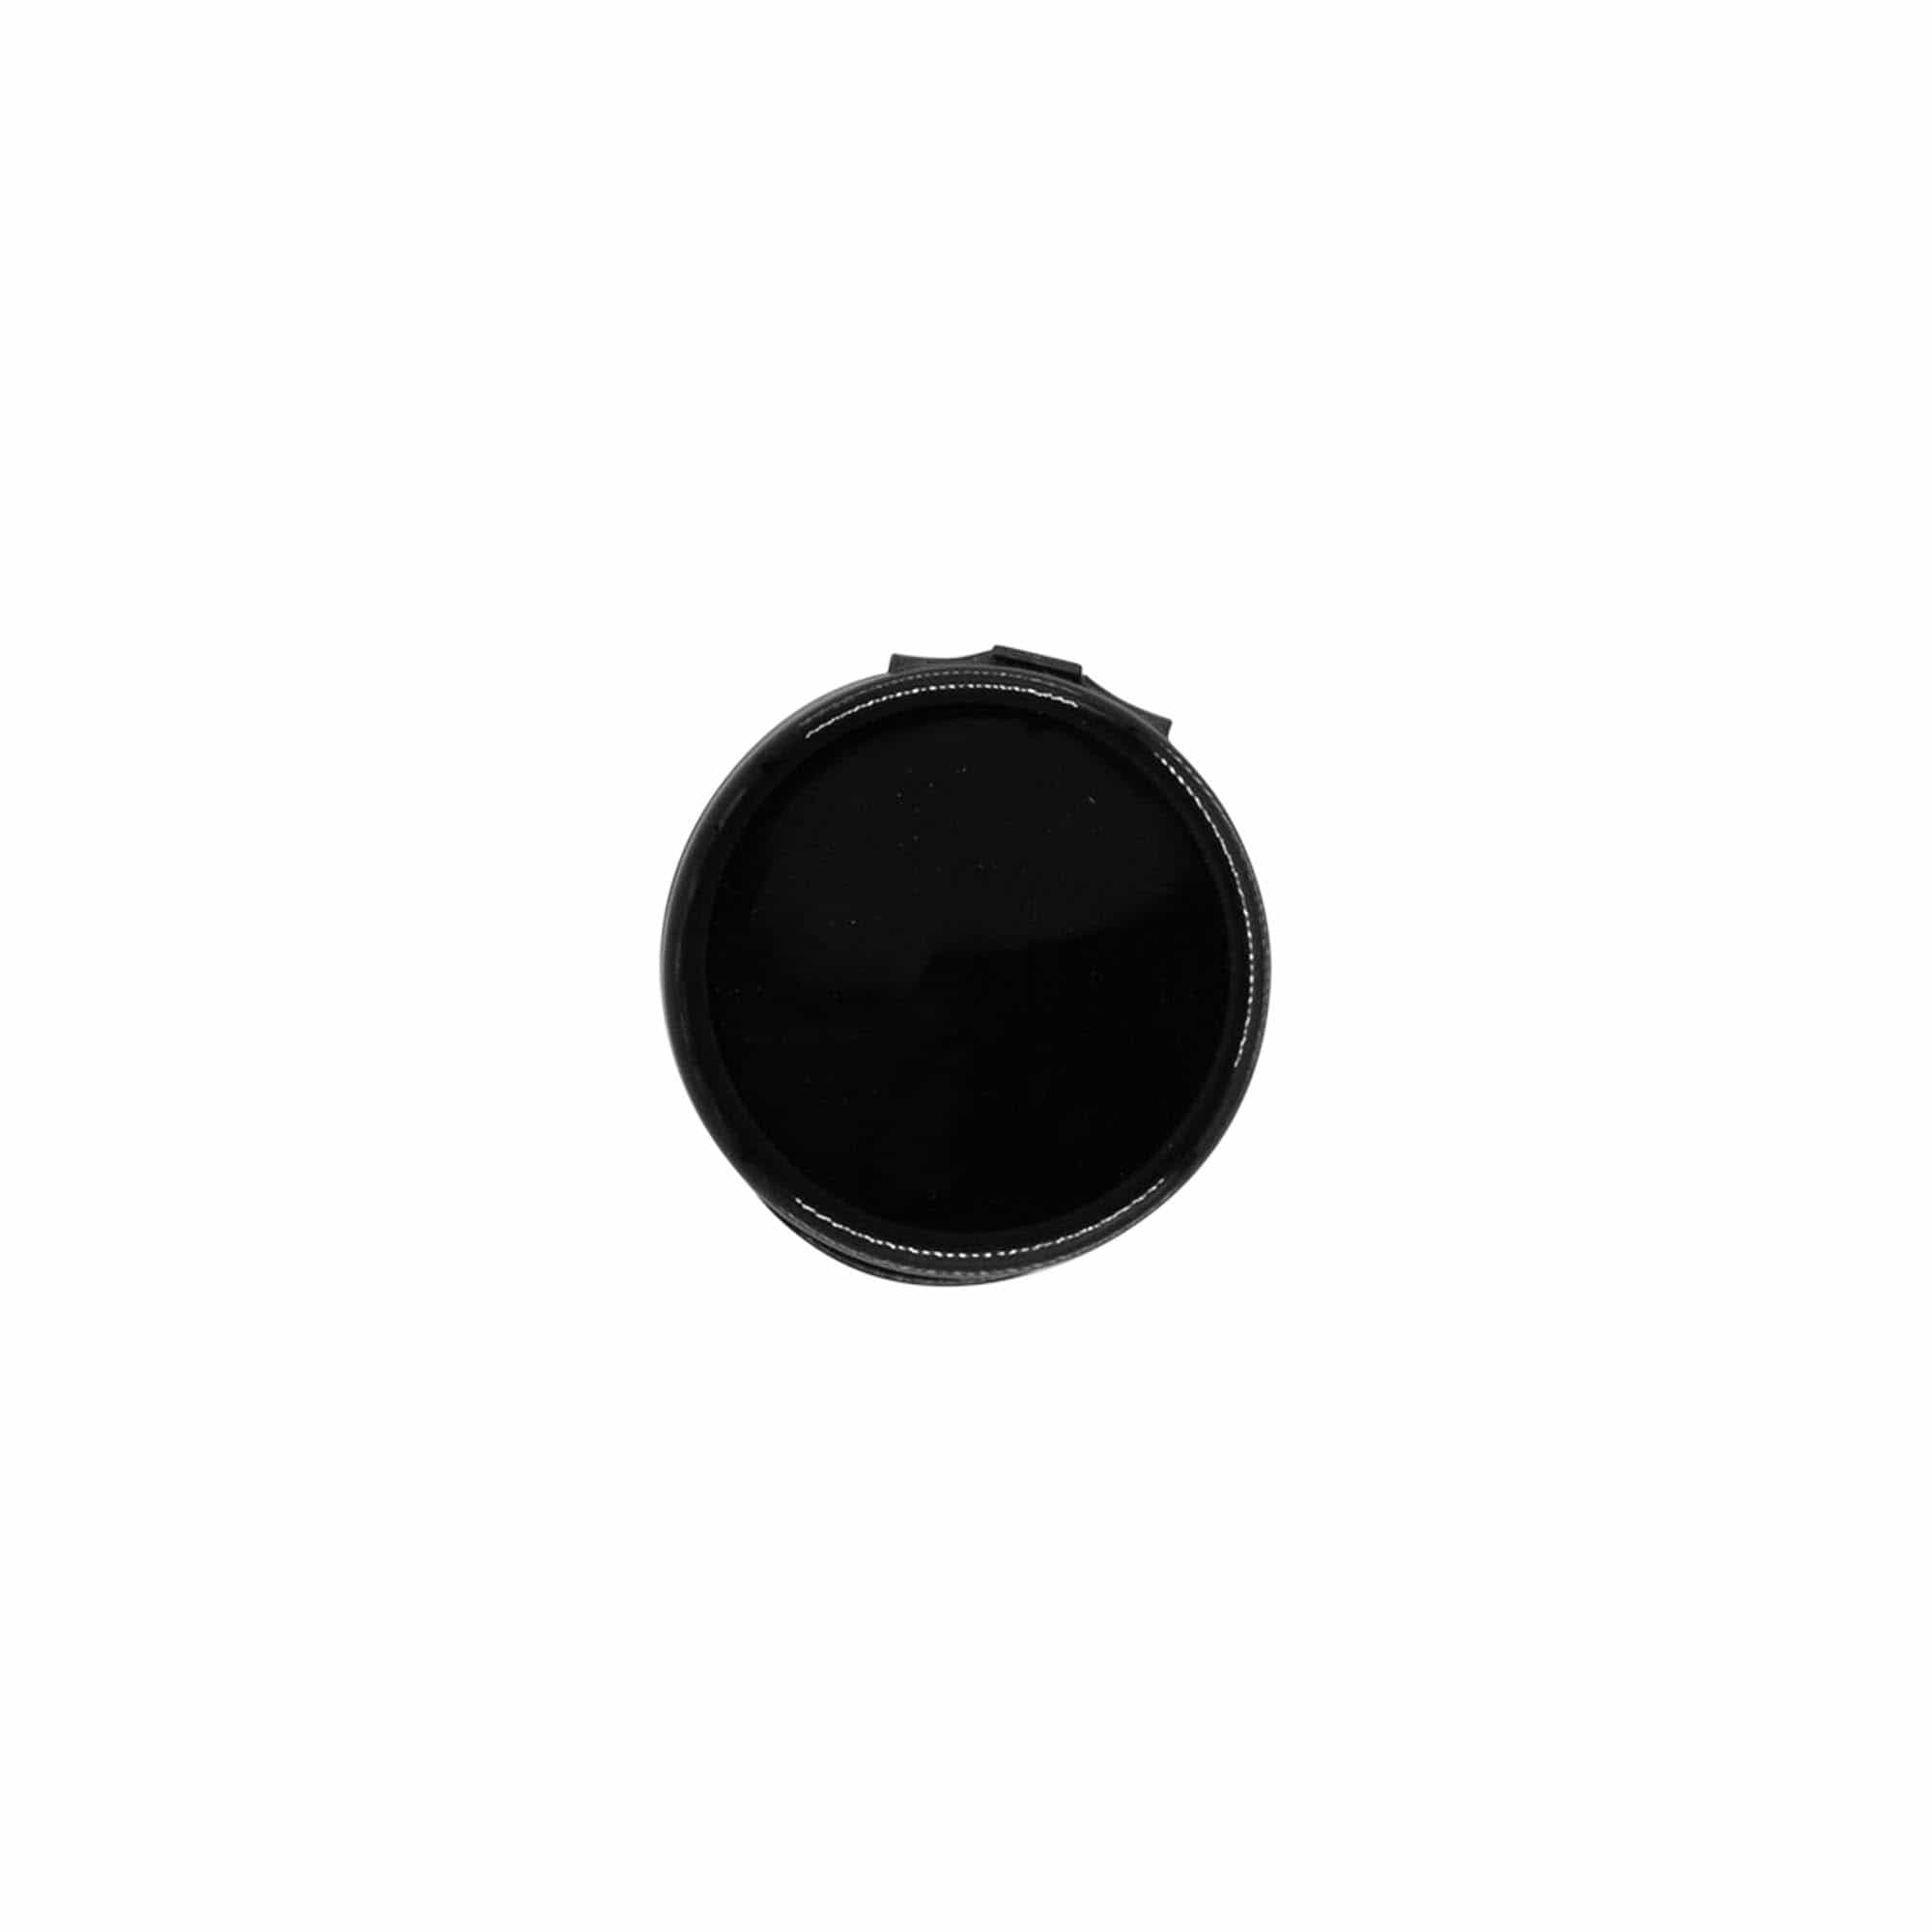 Schraubverschluss Klappscharnier, PP-Kunststoff, schwarz, für Mündung: GPI 24/410